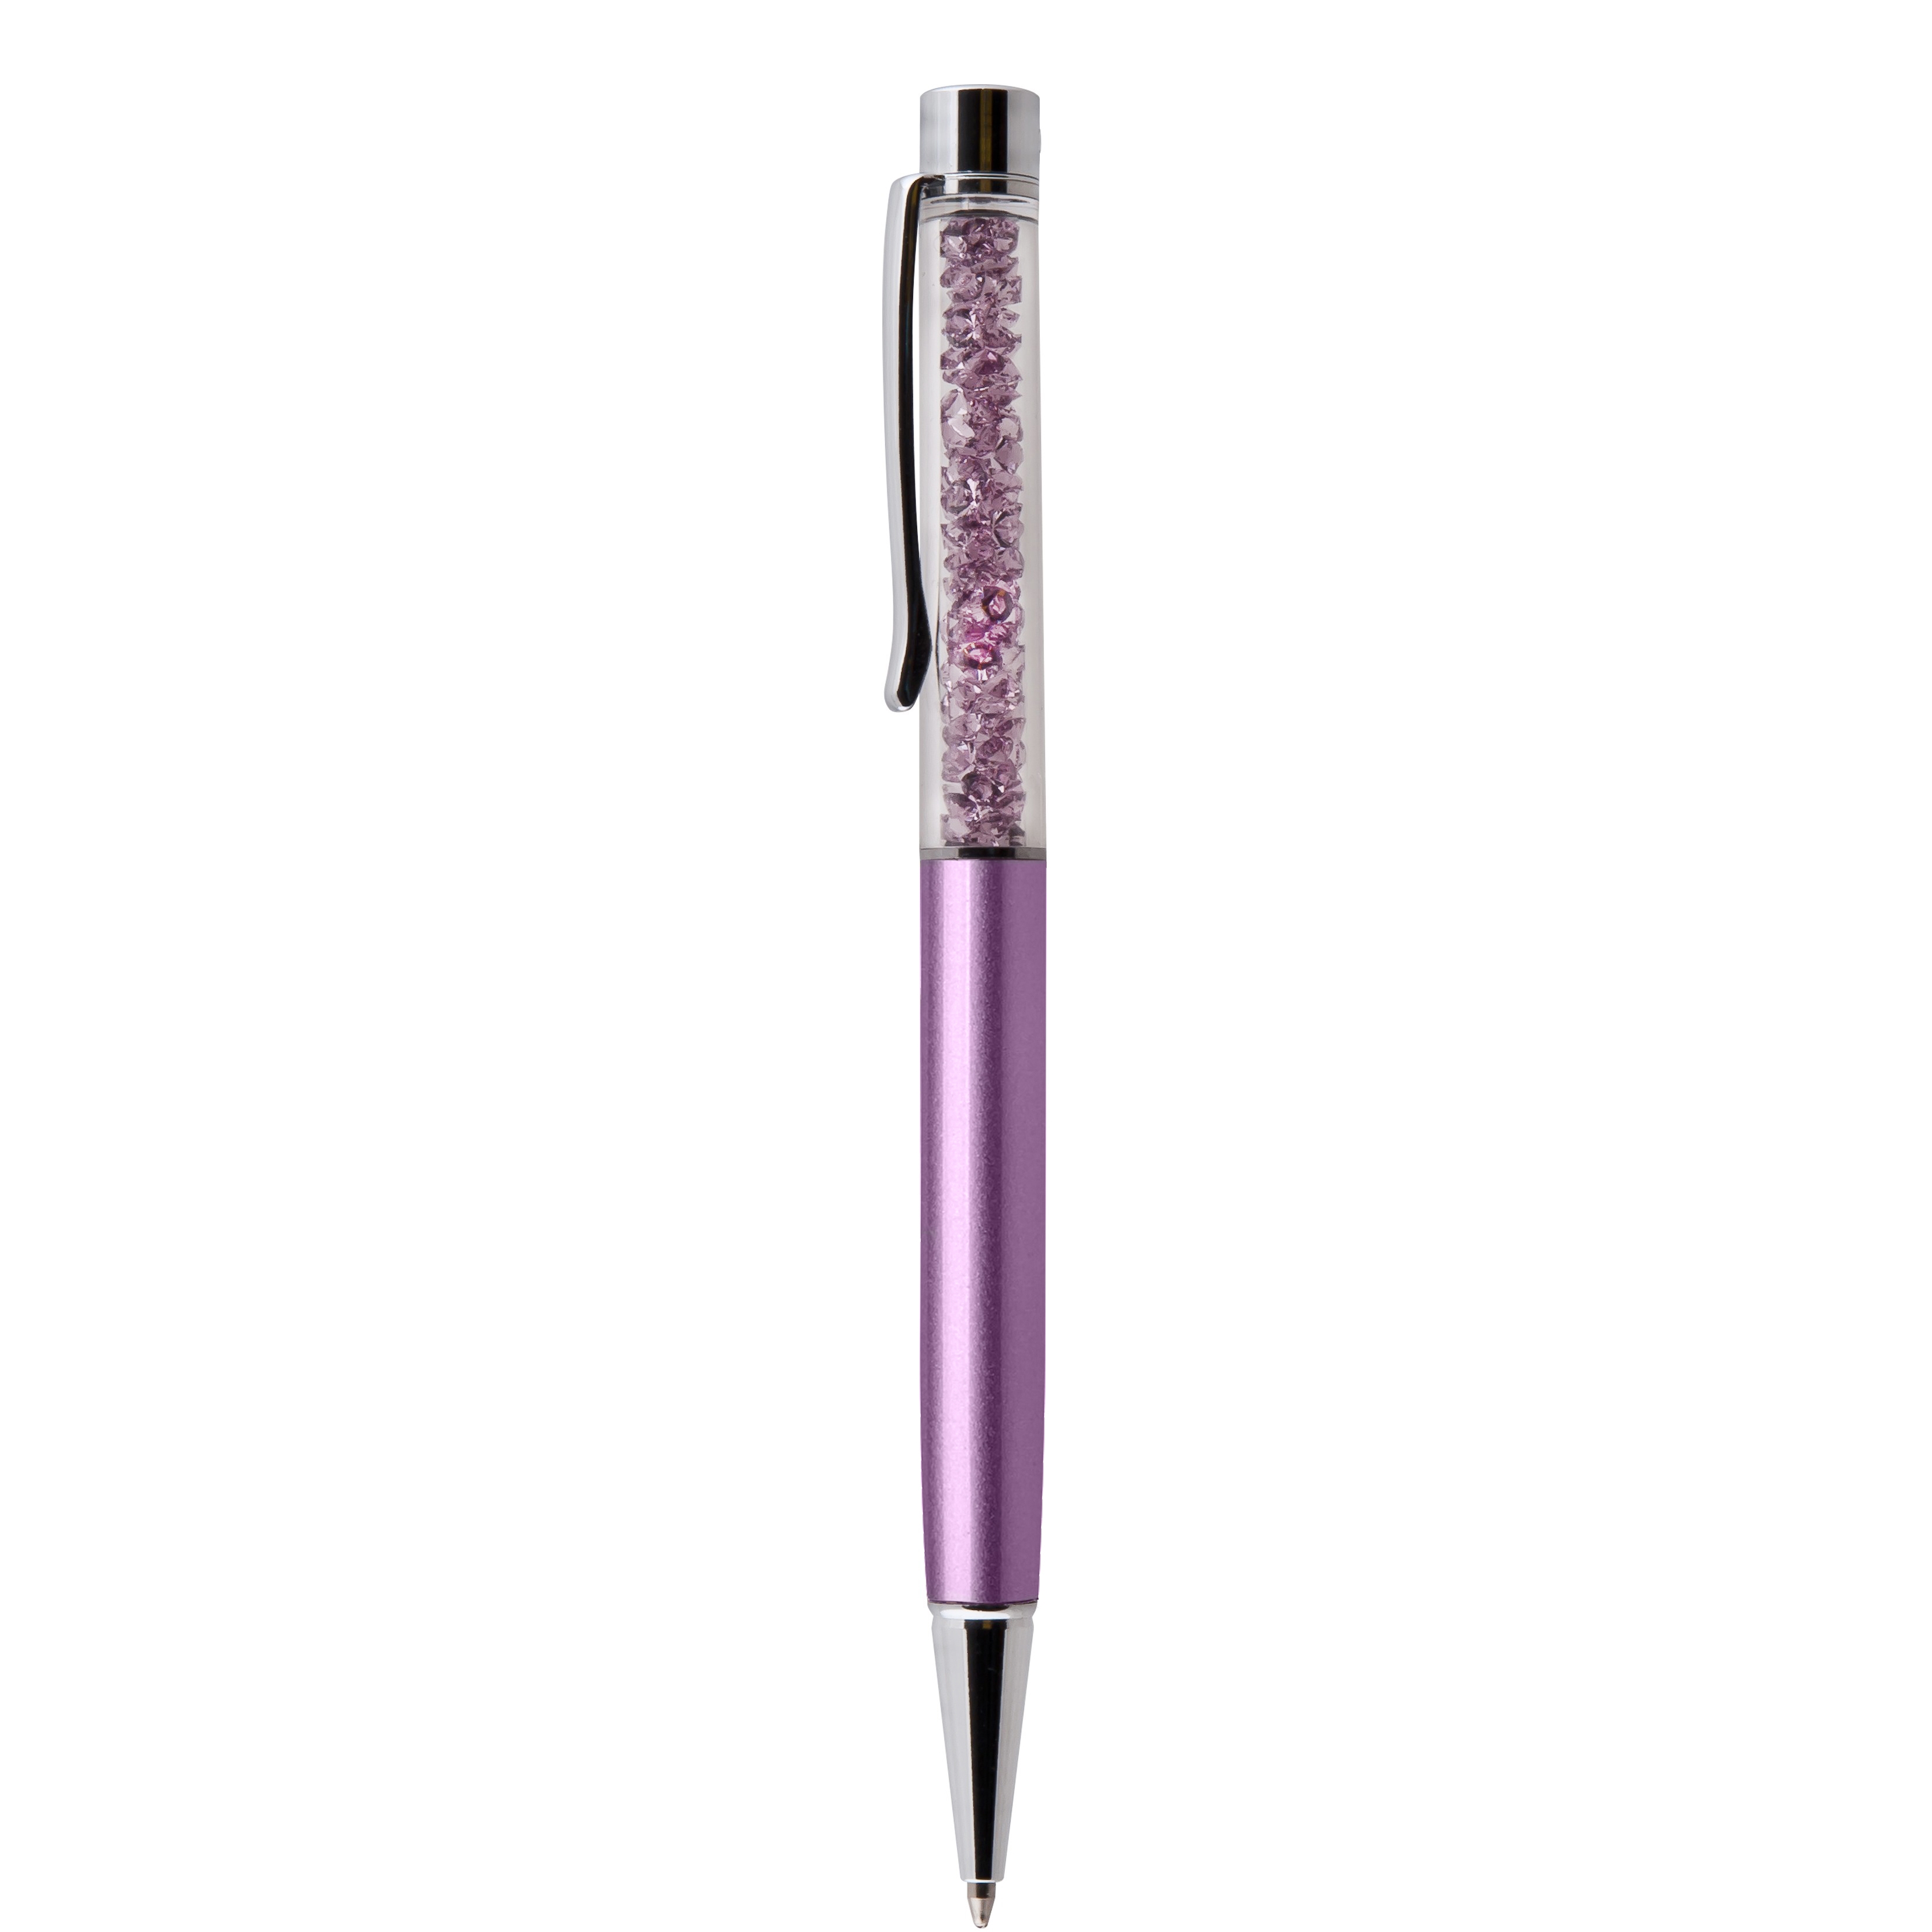 Kuličkové pero Art Crystella, světle purpurová s krystaly Swarovski, 14cm